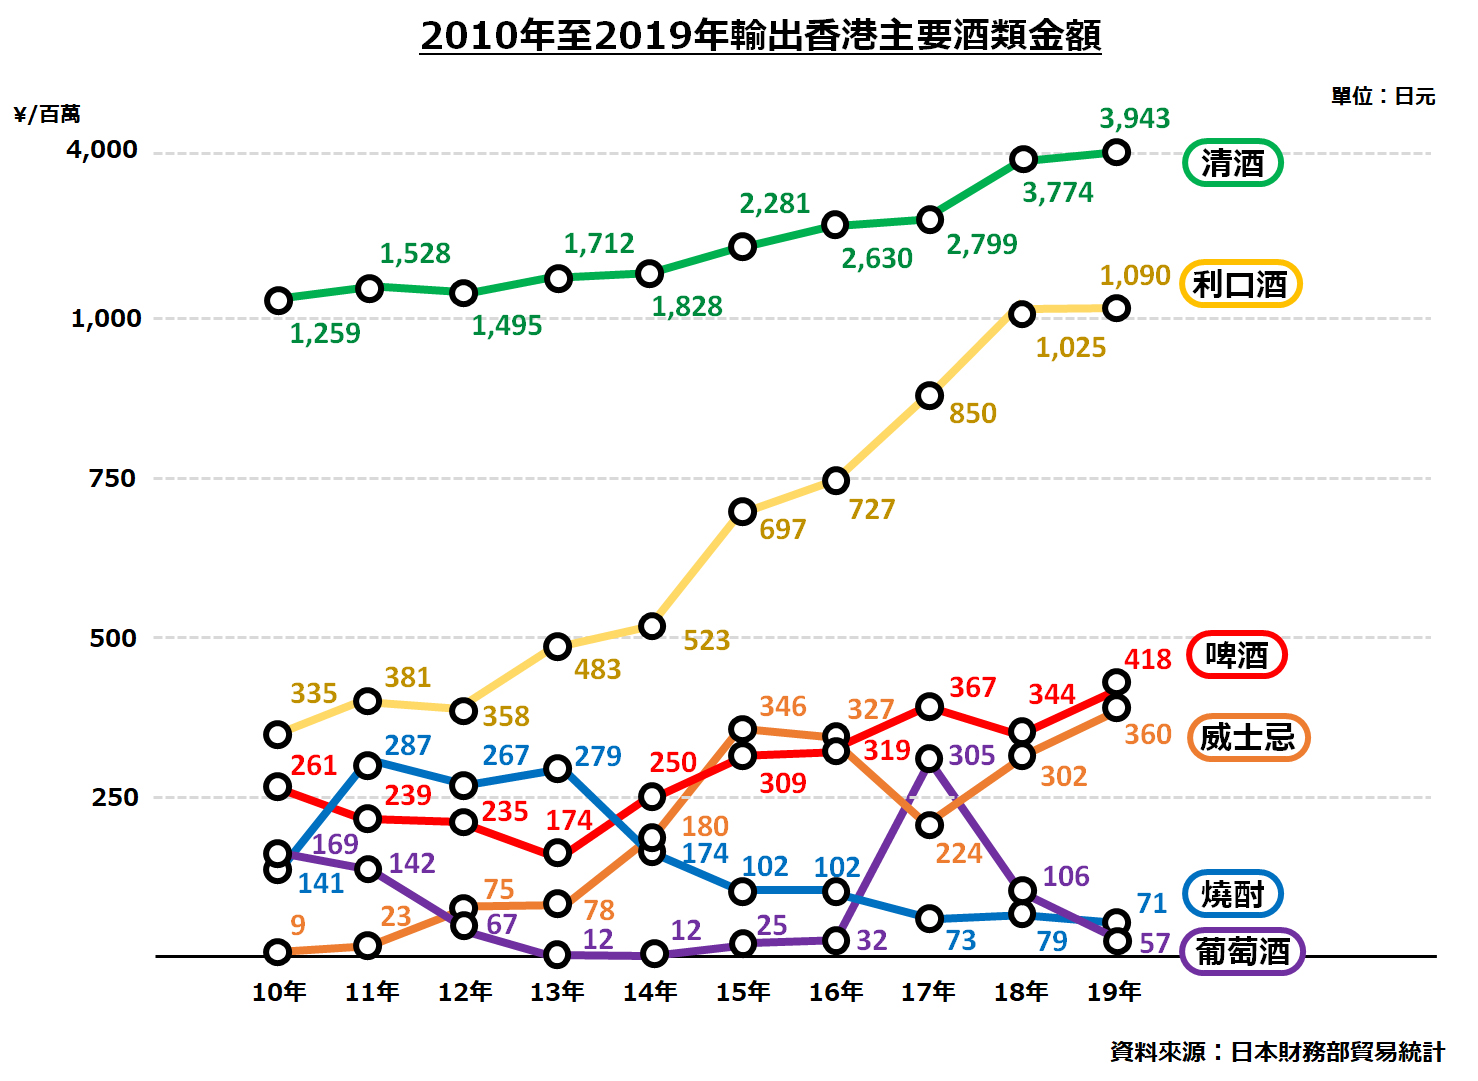 2010 年至 2019 年日本輸出香港主要酒類金額